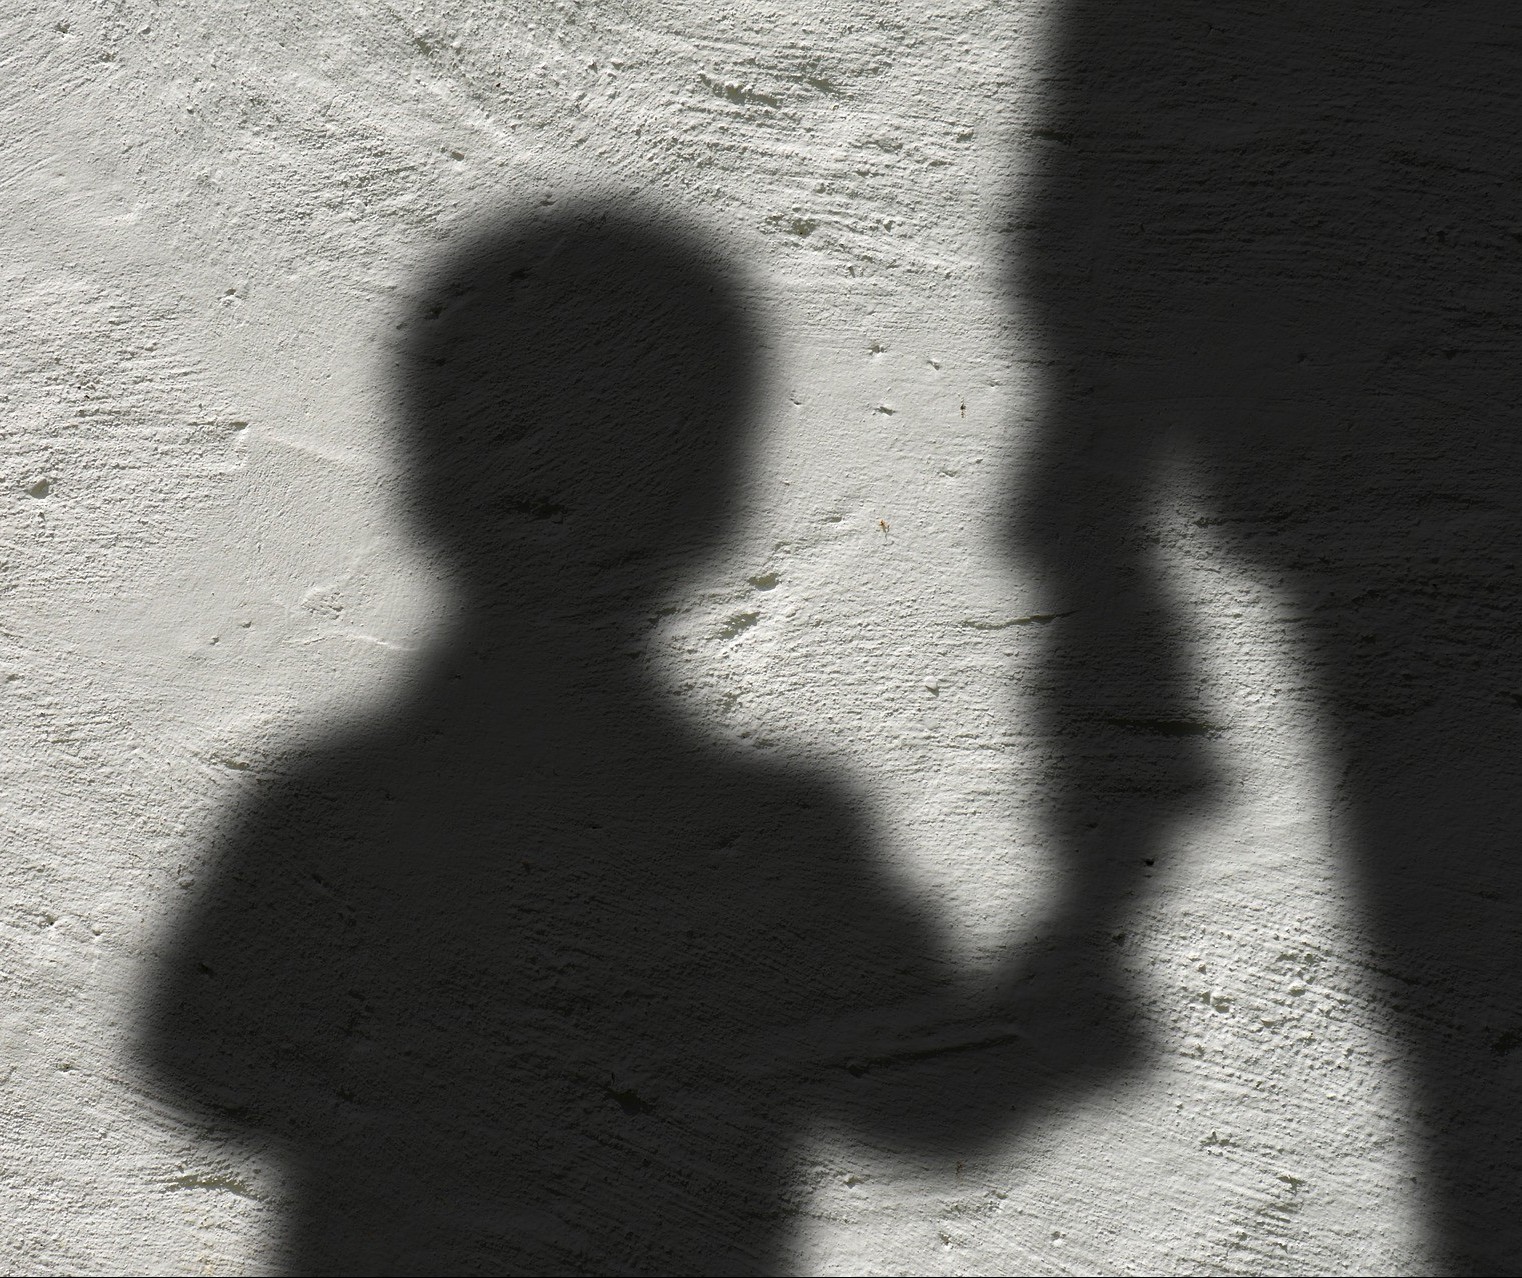 Psicóloga alerta pais: mudança de comportamento pode ser sinal de que a criança está sendo vítima de abuso sexual